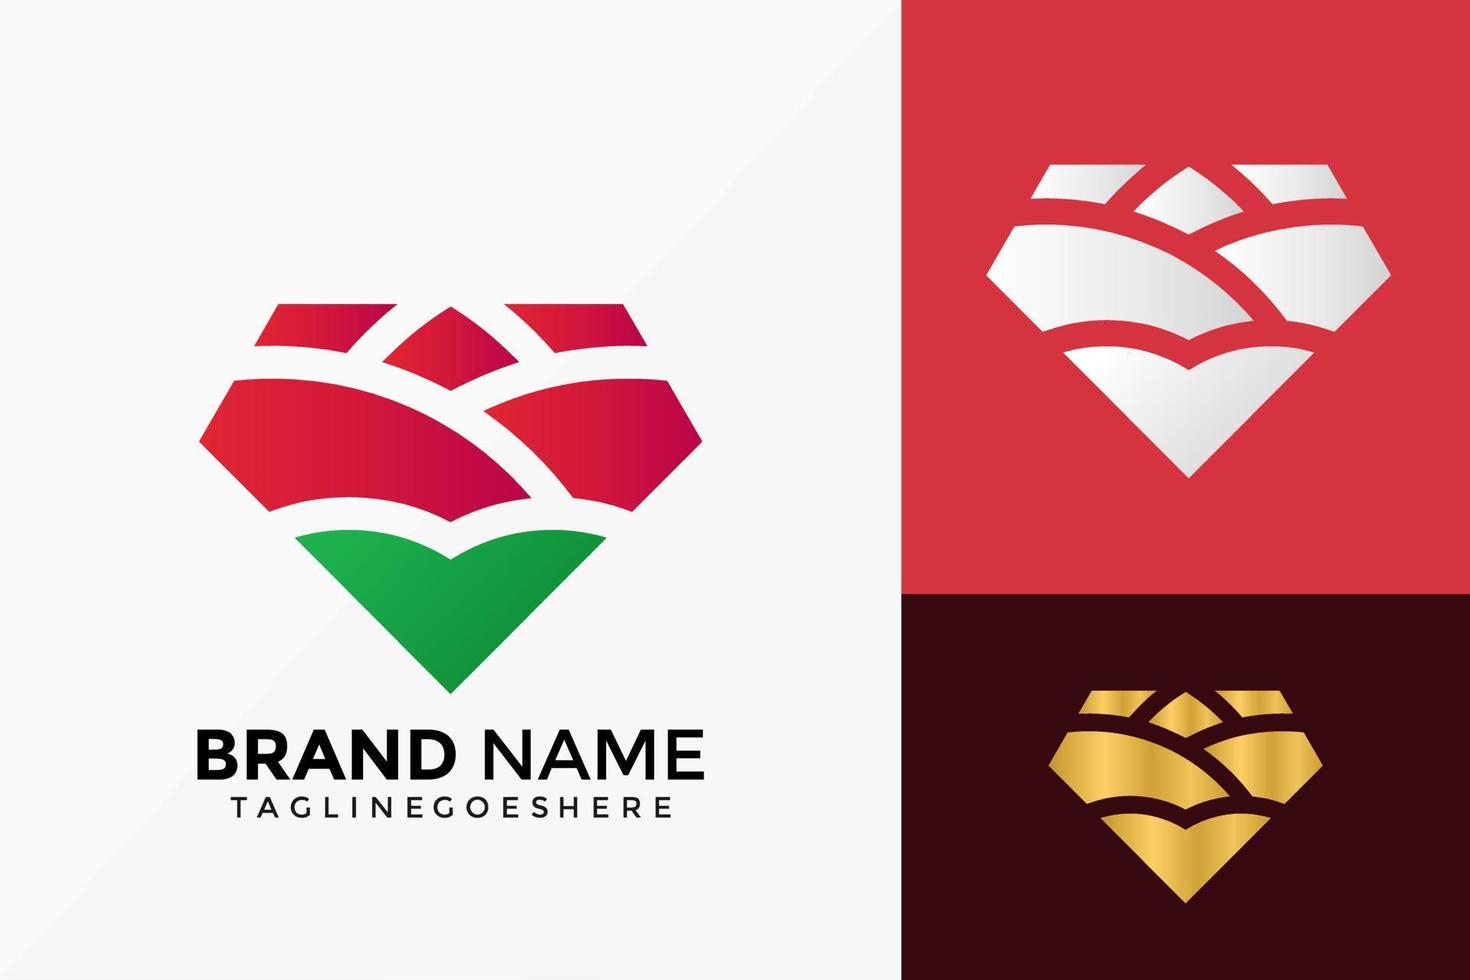 conception de vecteur de logo rose diamant abstrait. emblème d'identité de marque, concept de conception, logos, élément de logotype pour le modèle.